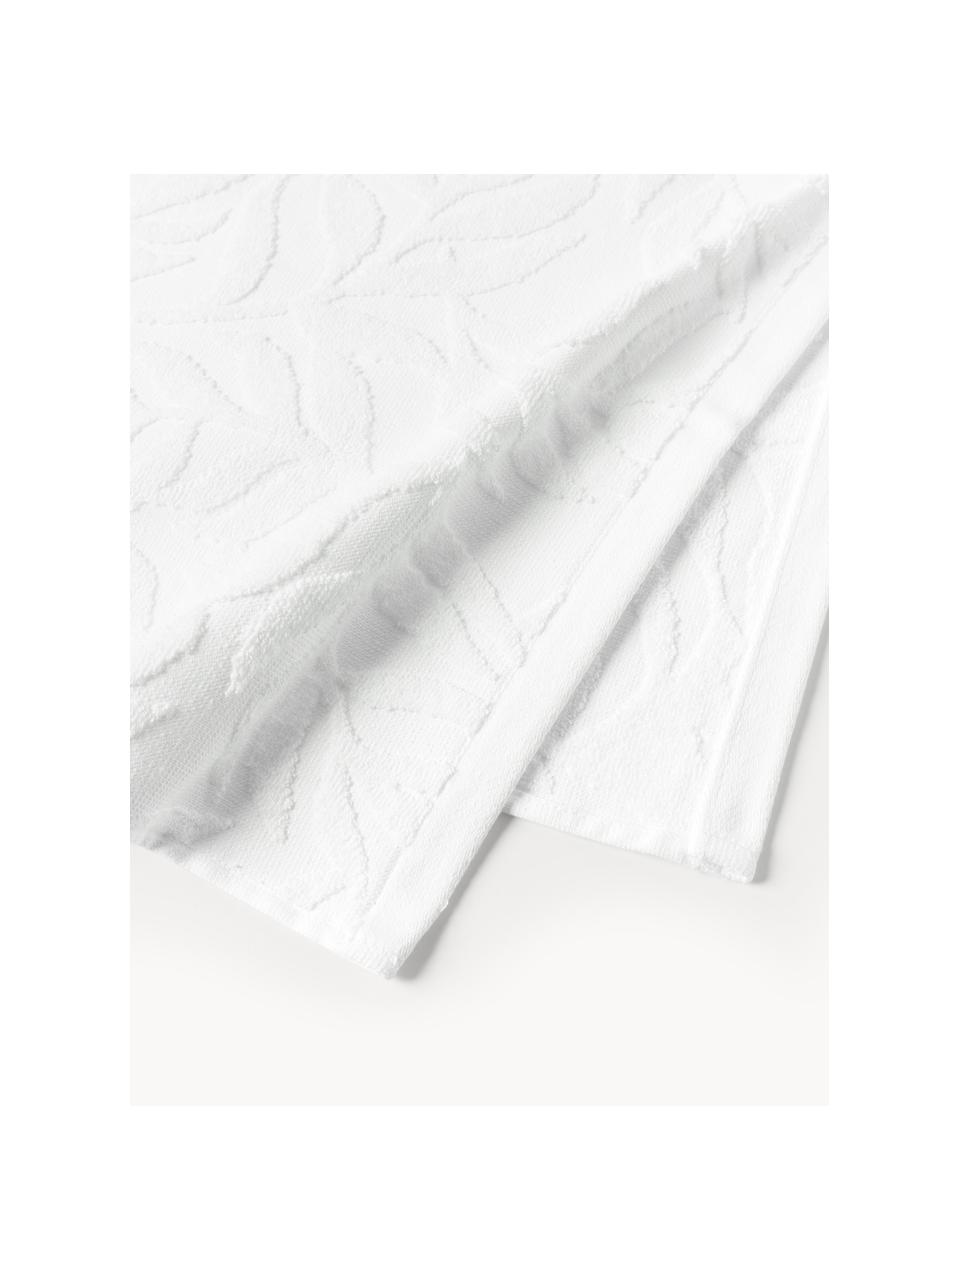 Lot de serviettes de bain en coton Leaf, tailles variées, Blanc, 3 éléments (1 serviette invité, 1 serviette de toilette et 1 drap de bain)